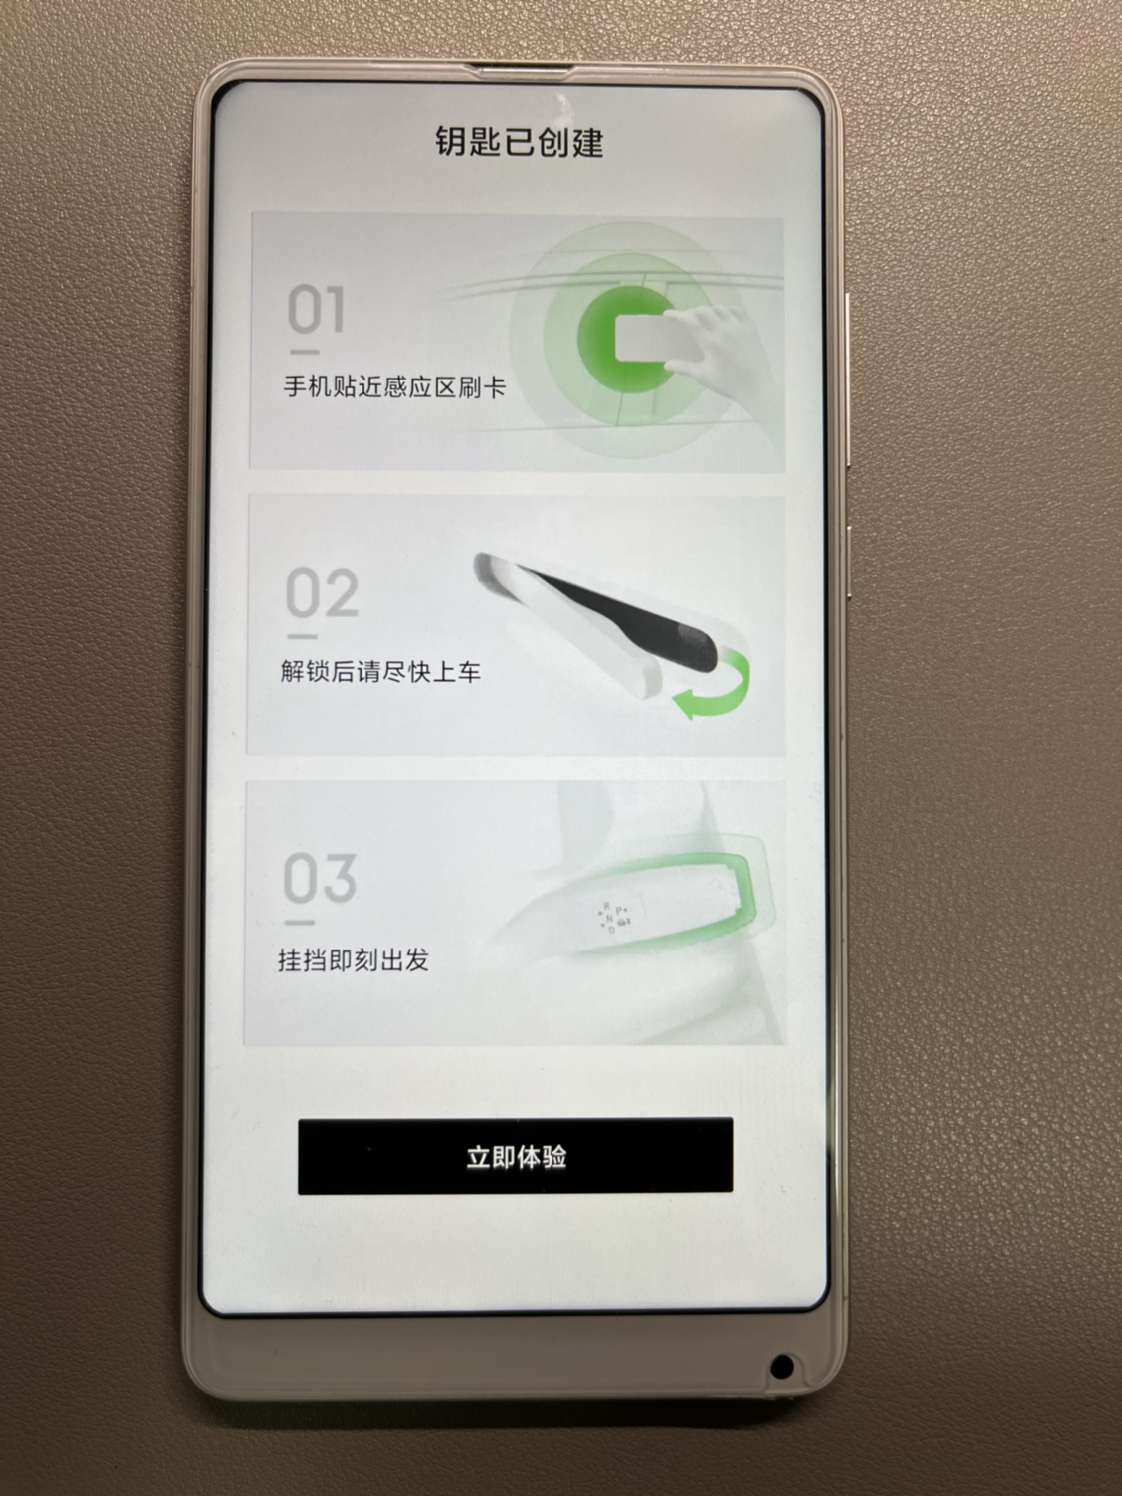 比亚迪DiLink携手小米推出手机NFC车钥匙：以智慧创新打开万物互联 - 新智派